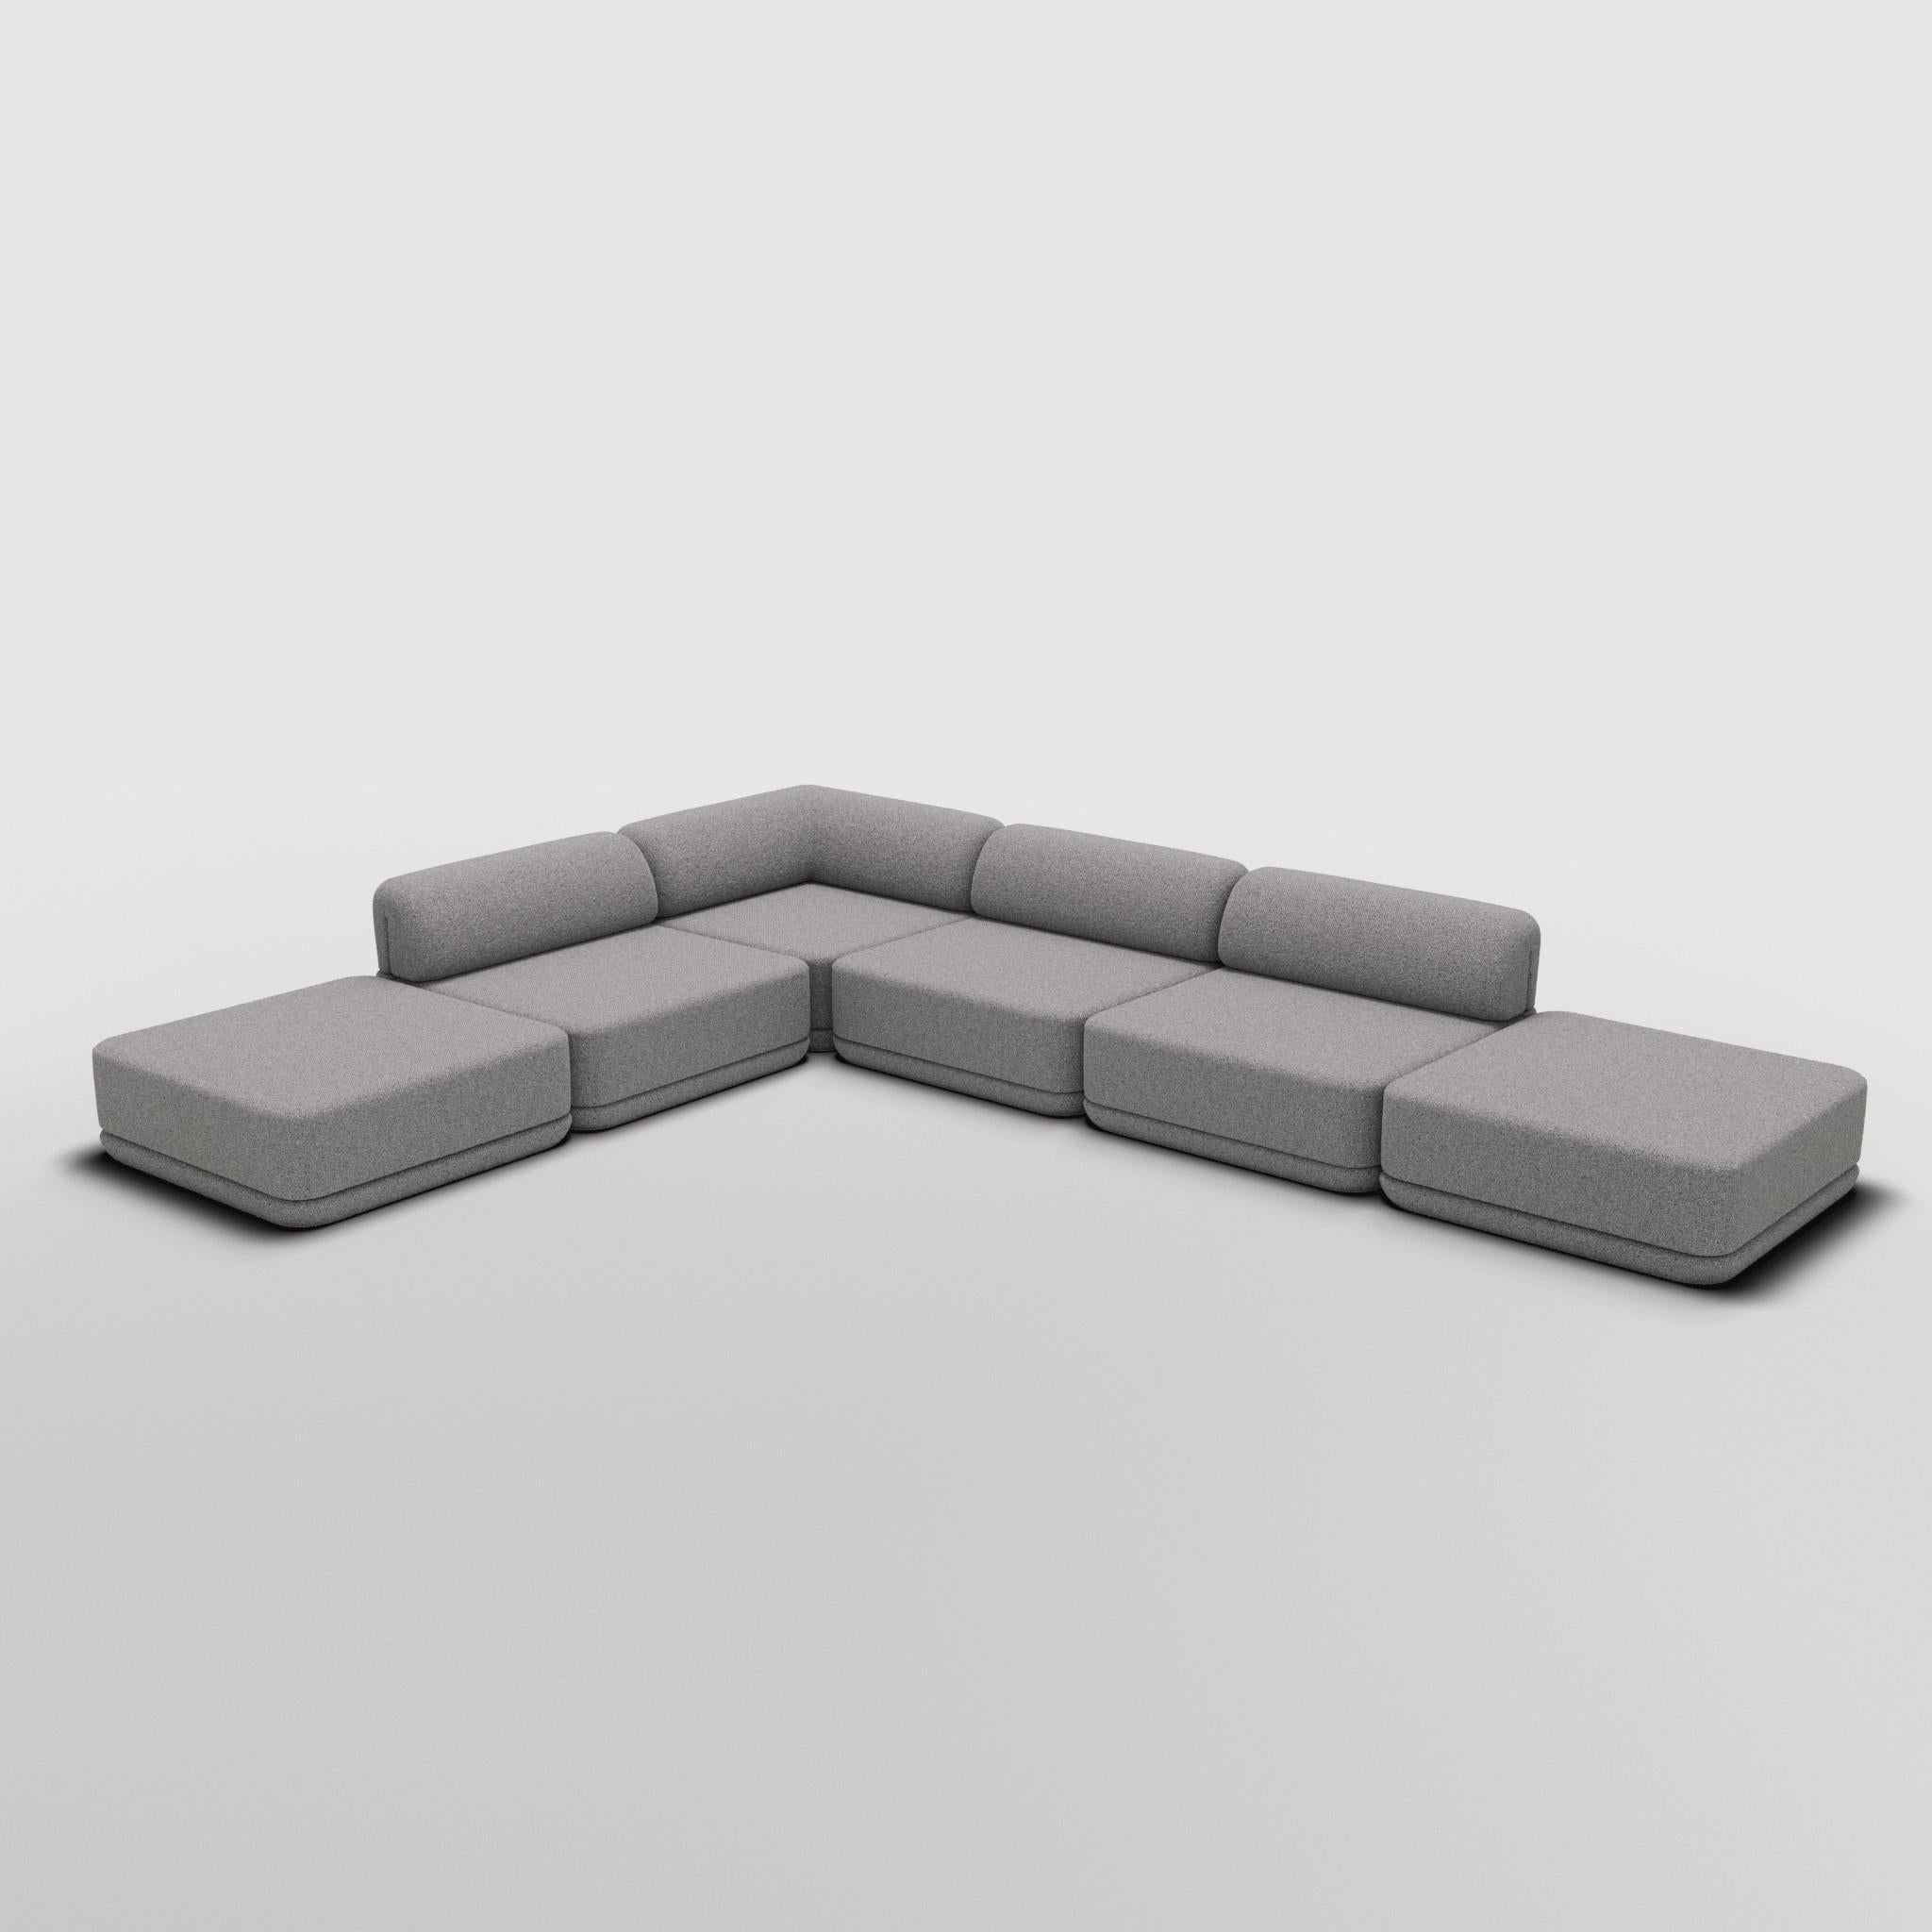 Coin Lounge Ottoman Mix Sectional - Inspiré par les meubles de luxe italiens des années 70

Découvrez le canapé Cube, où l'art rencontre l'adaptabilité. Son design sculptural et son confort personnalisable créent des possibilités infinies pour votre